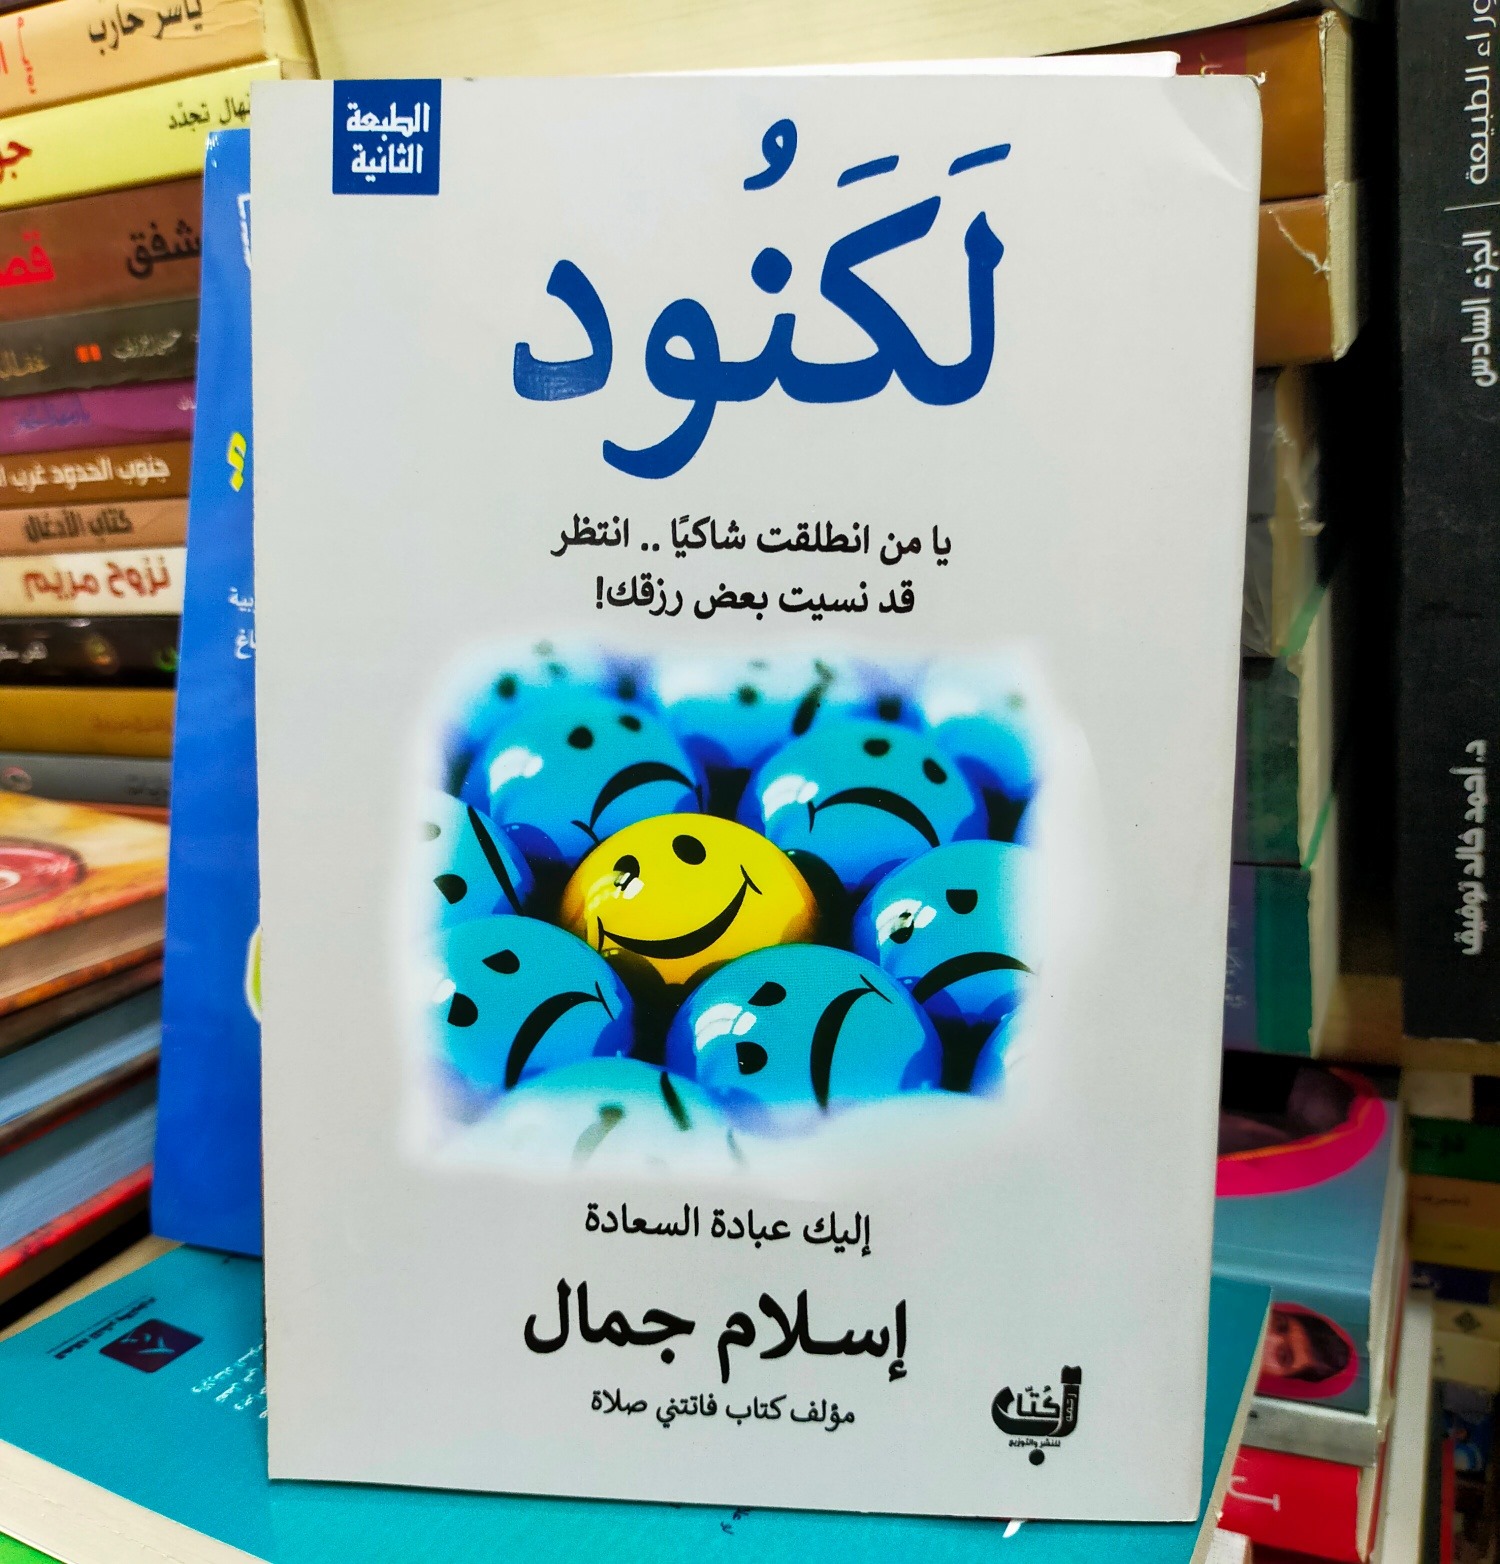 تلخيص كتاب لكنود للكاتب إسلام جمال